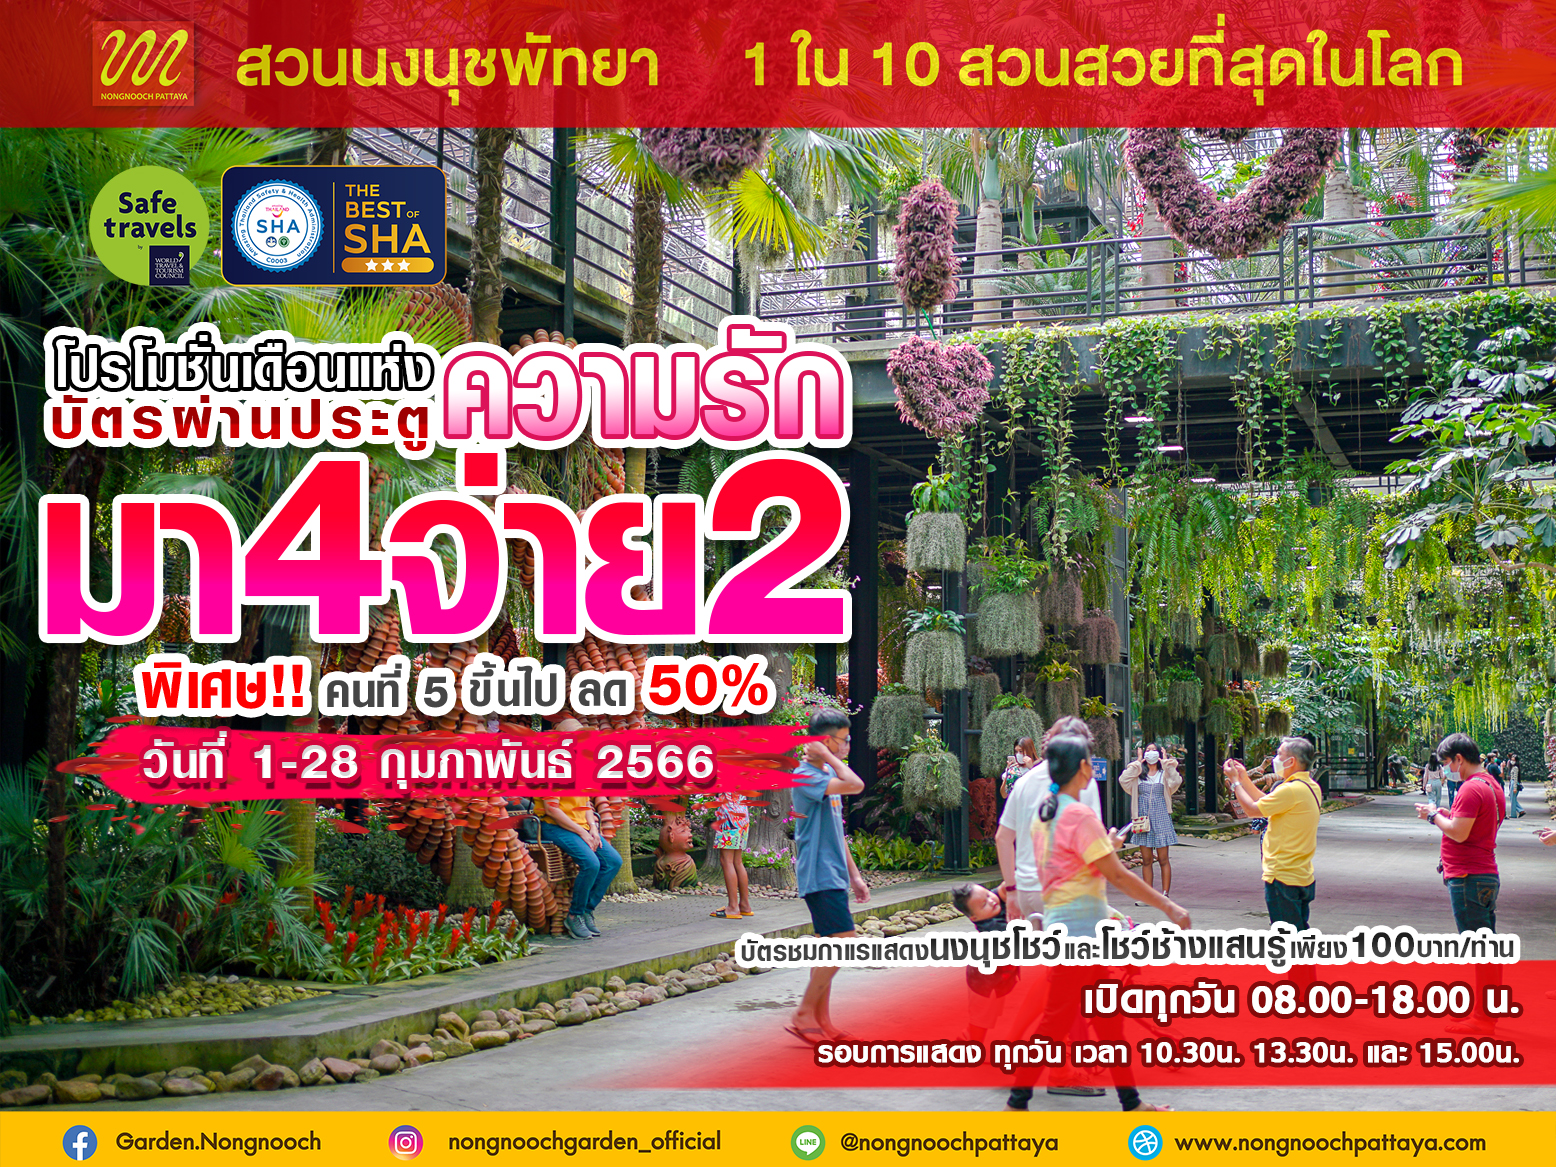 เที่ยวมุมไหนก่อนดี..มีโปรเด็ด  ต้อนรับเดือนแห่งความรัก มา 4 จ่าย 2   สวนนงนุช จัดโปรโมชั่นพิเศษ สำหรับคนไทย